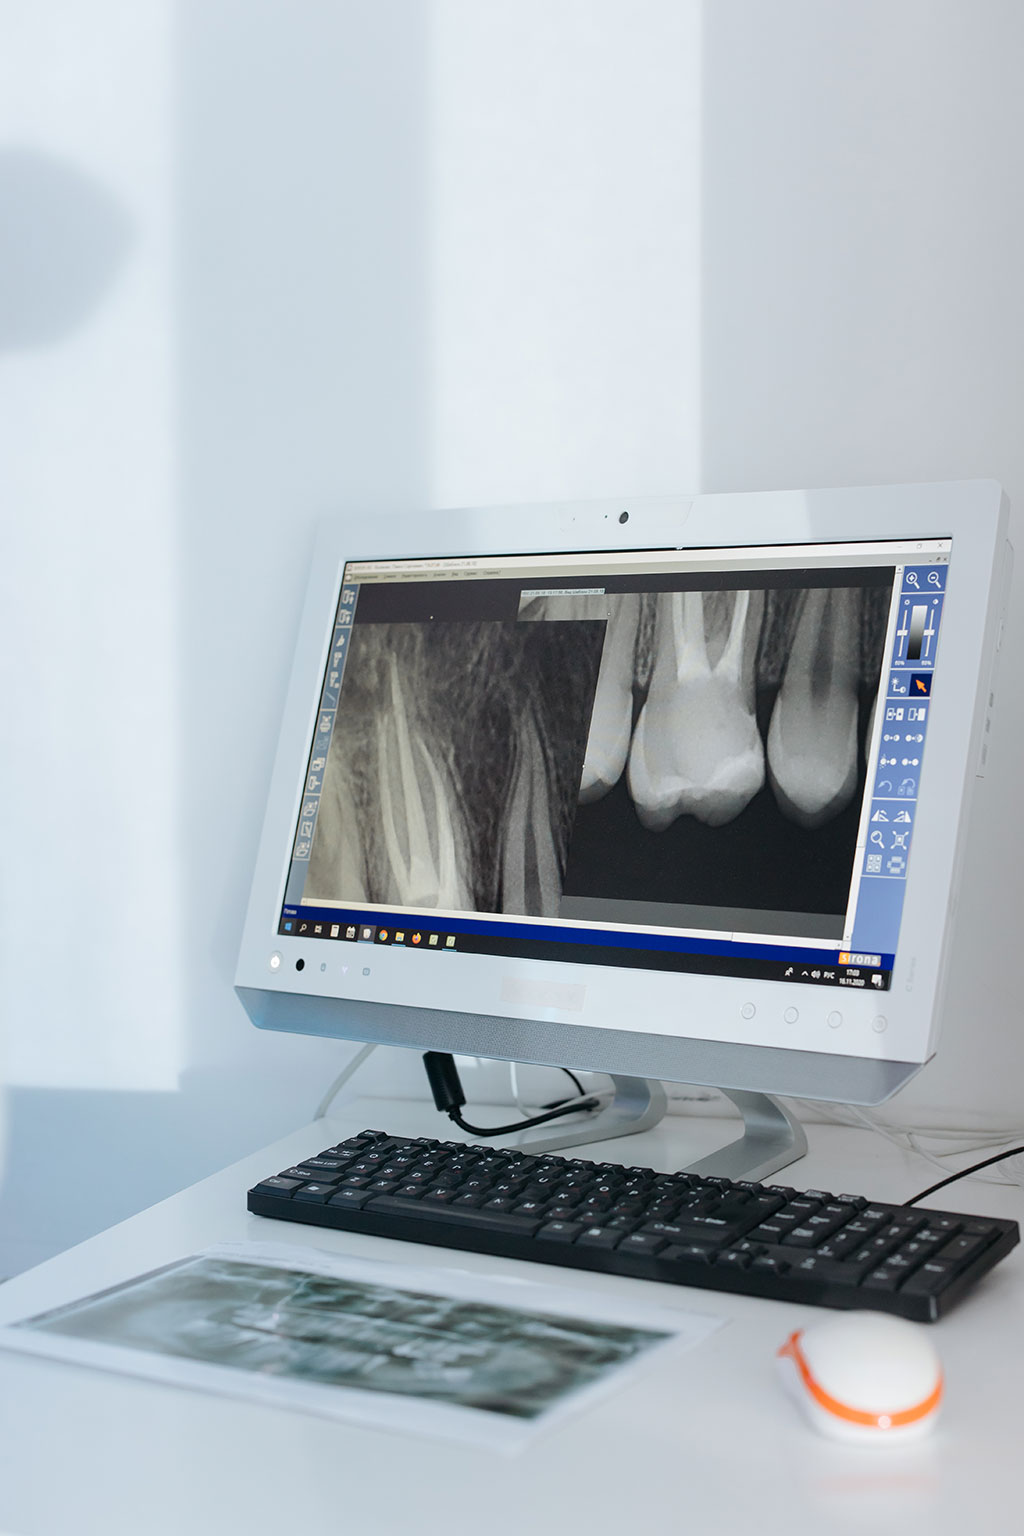 Imagen: Un modelo de IA puede diagnosticar automáticamente la osteoporosis a partir de radiografías de la cadera (Fotografía cortesía de Pexels)